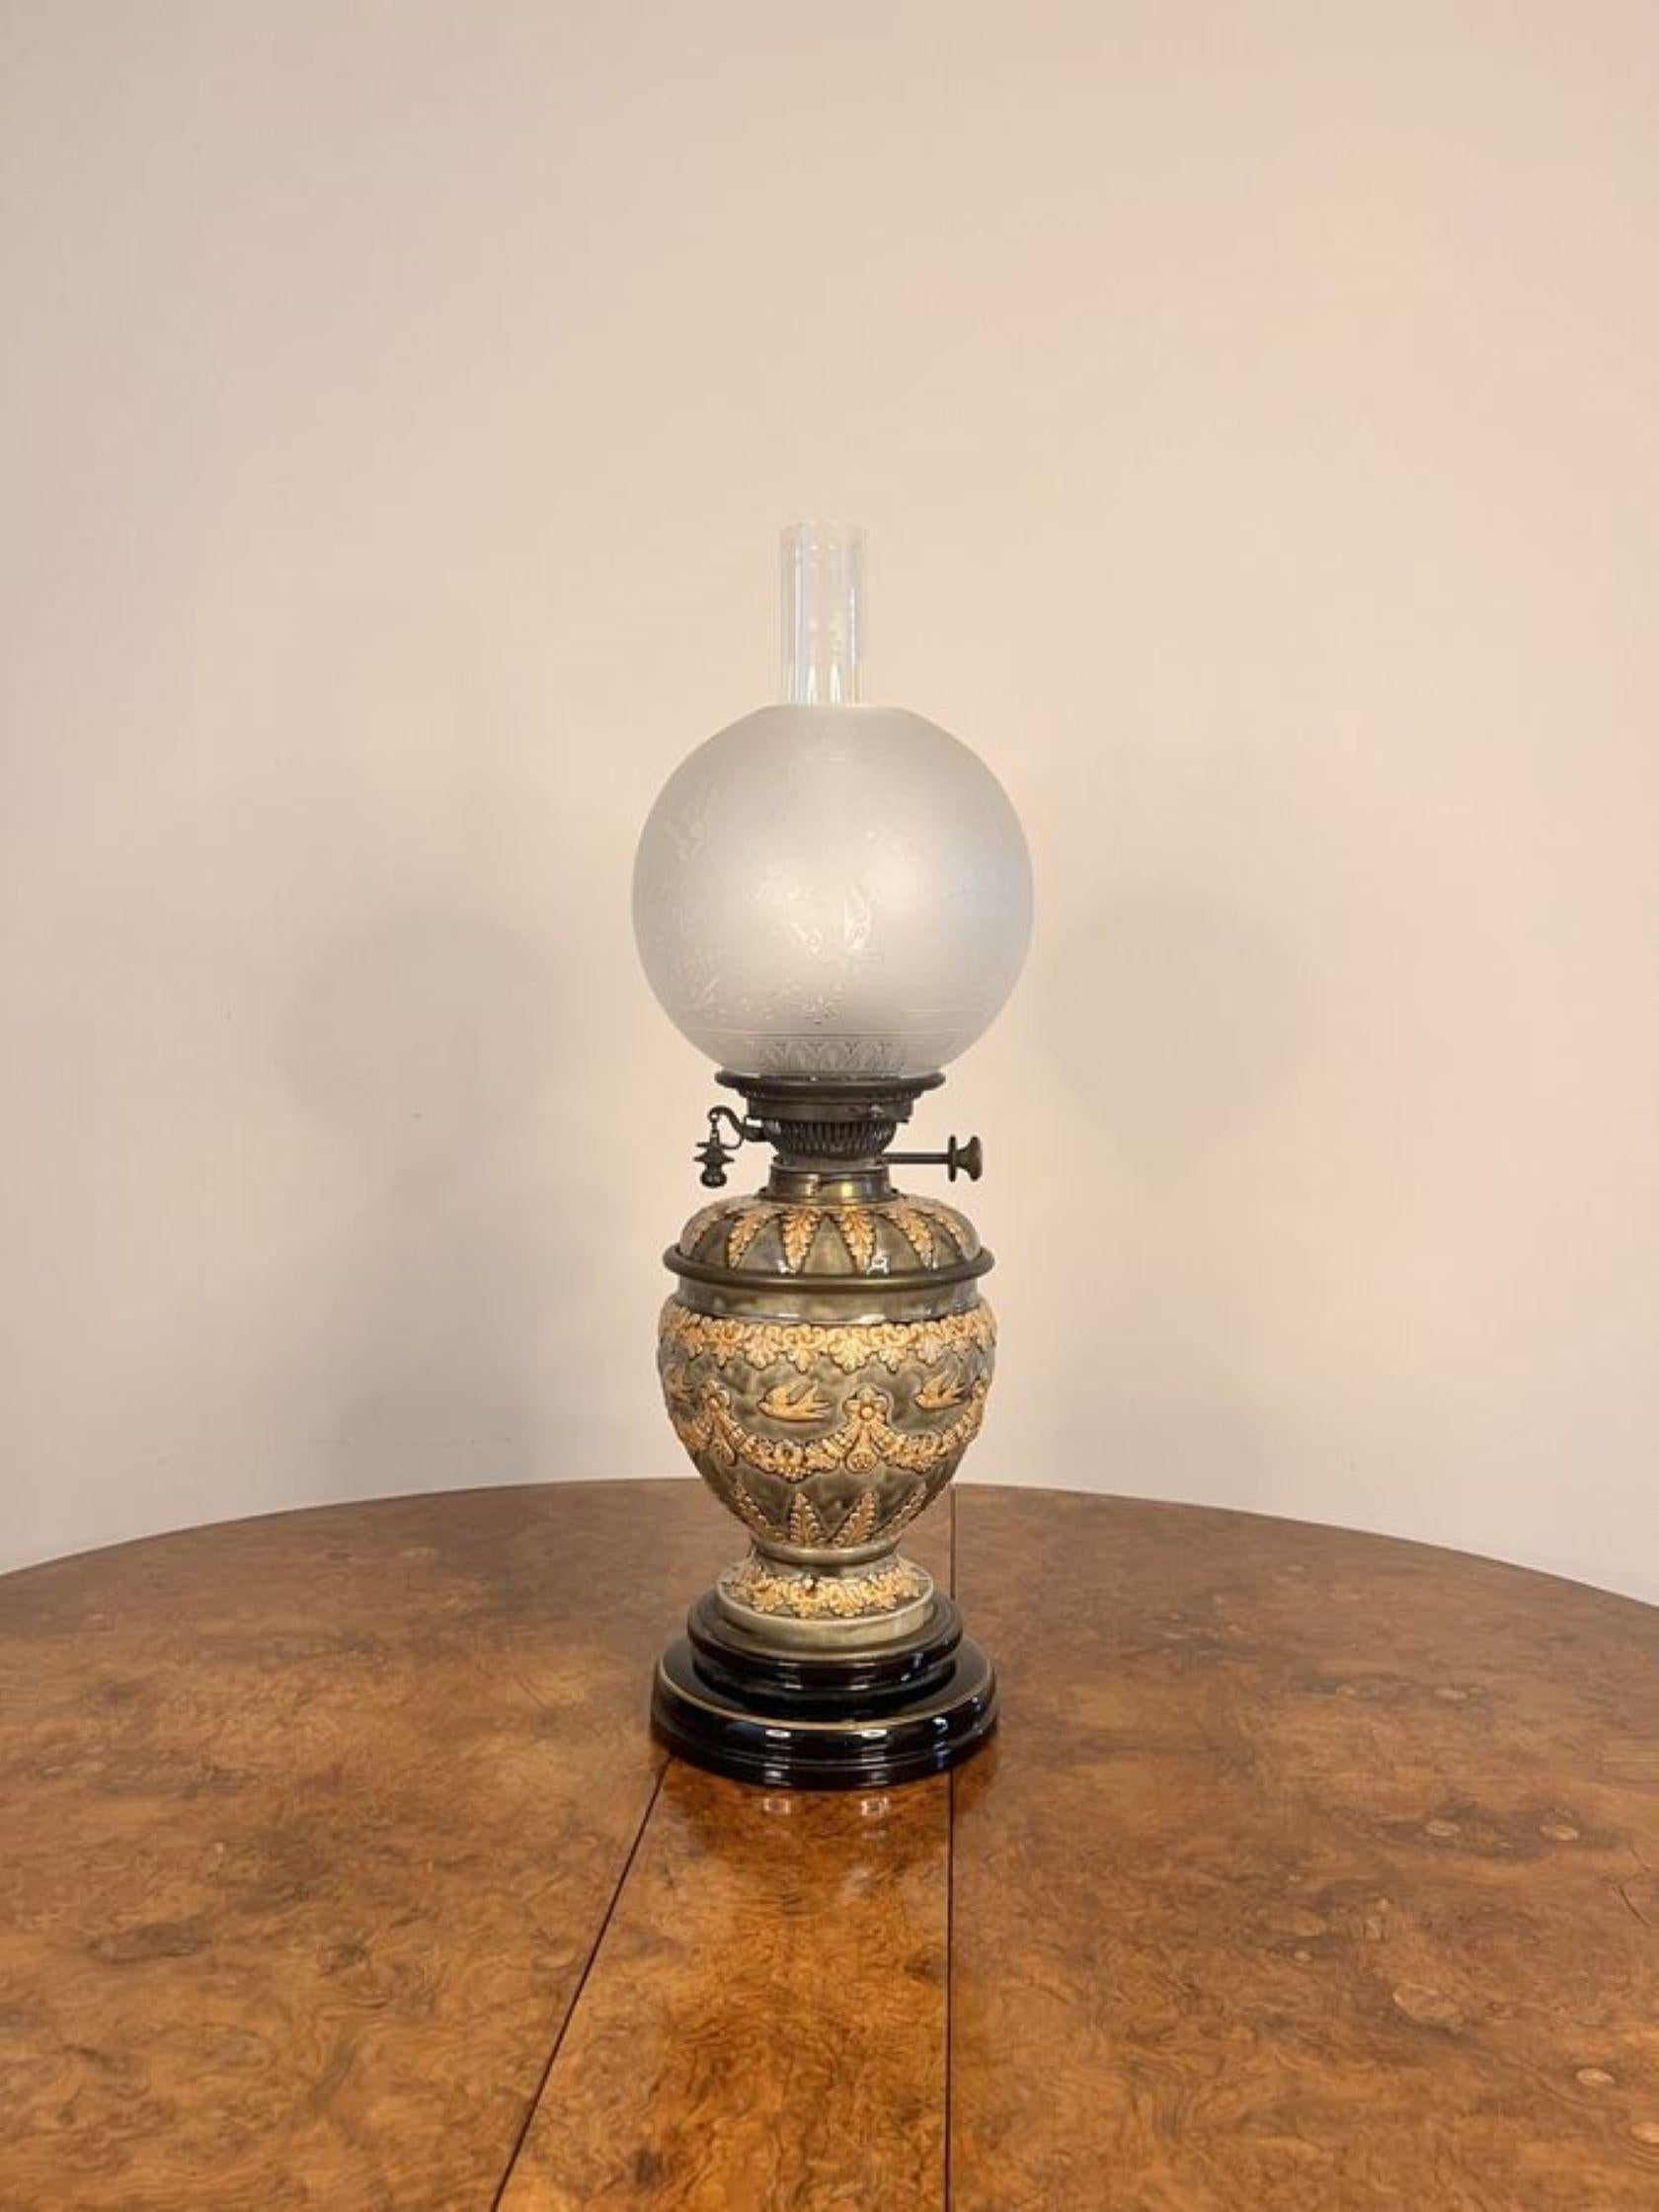 Fantastische Qualität antike Doulton Lambeth viktorianischen Öllampe mit einem geätzten Glasschirm und Glas Schornstein, eine doppelte Messing-Brenner durch eine hervorragende Qualität handbemalt grün und cremefarben Keramik vasenförmigen Säule mit